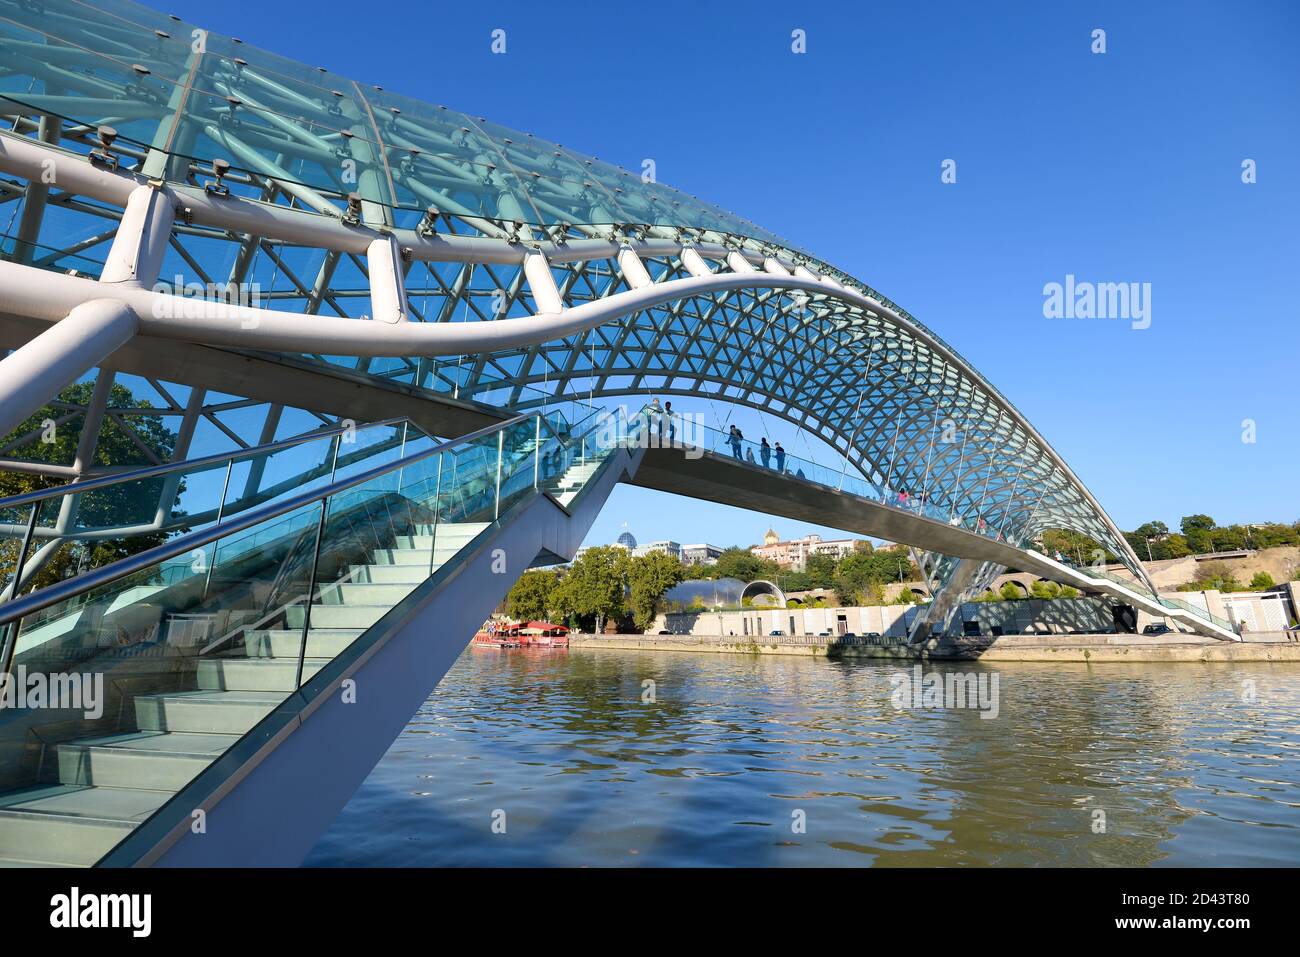 Friedensbrücke in Tiflis, Georgien. Moderne Fußgängerbrücke über den Fluss Kura. Aus kurvigen Stahl und Glas gebaut. Stockfoto